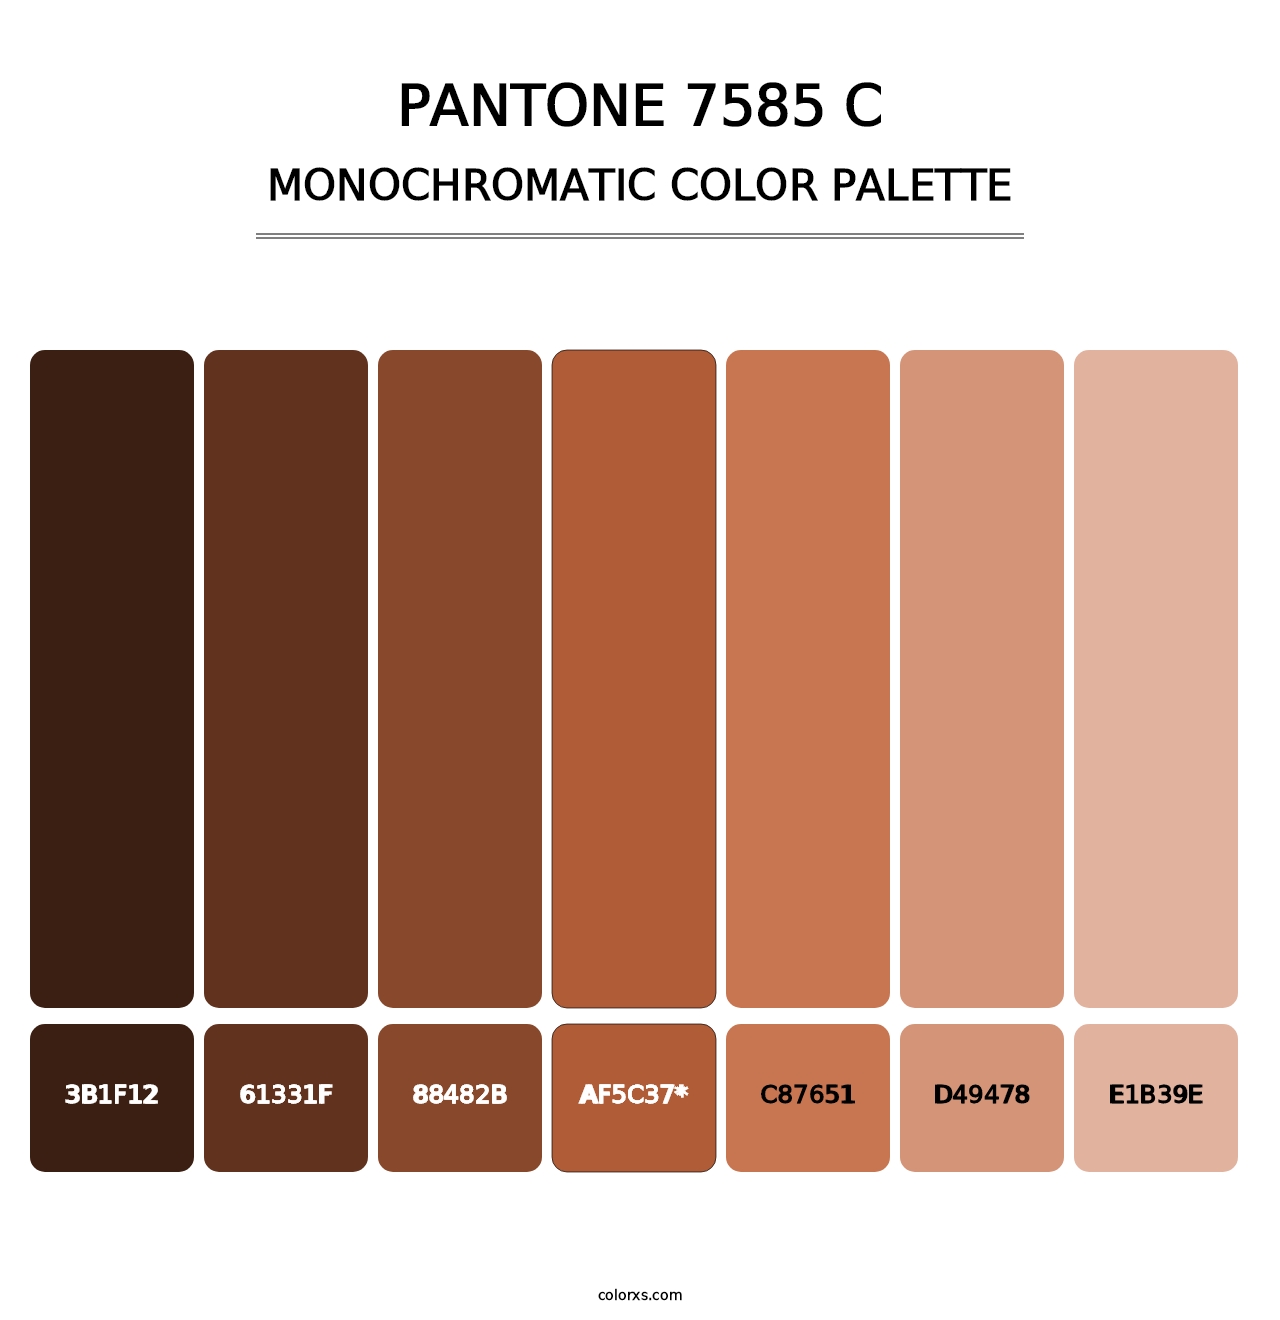 PANTONE 7585 C - Monochromatic Color Palette